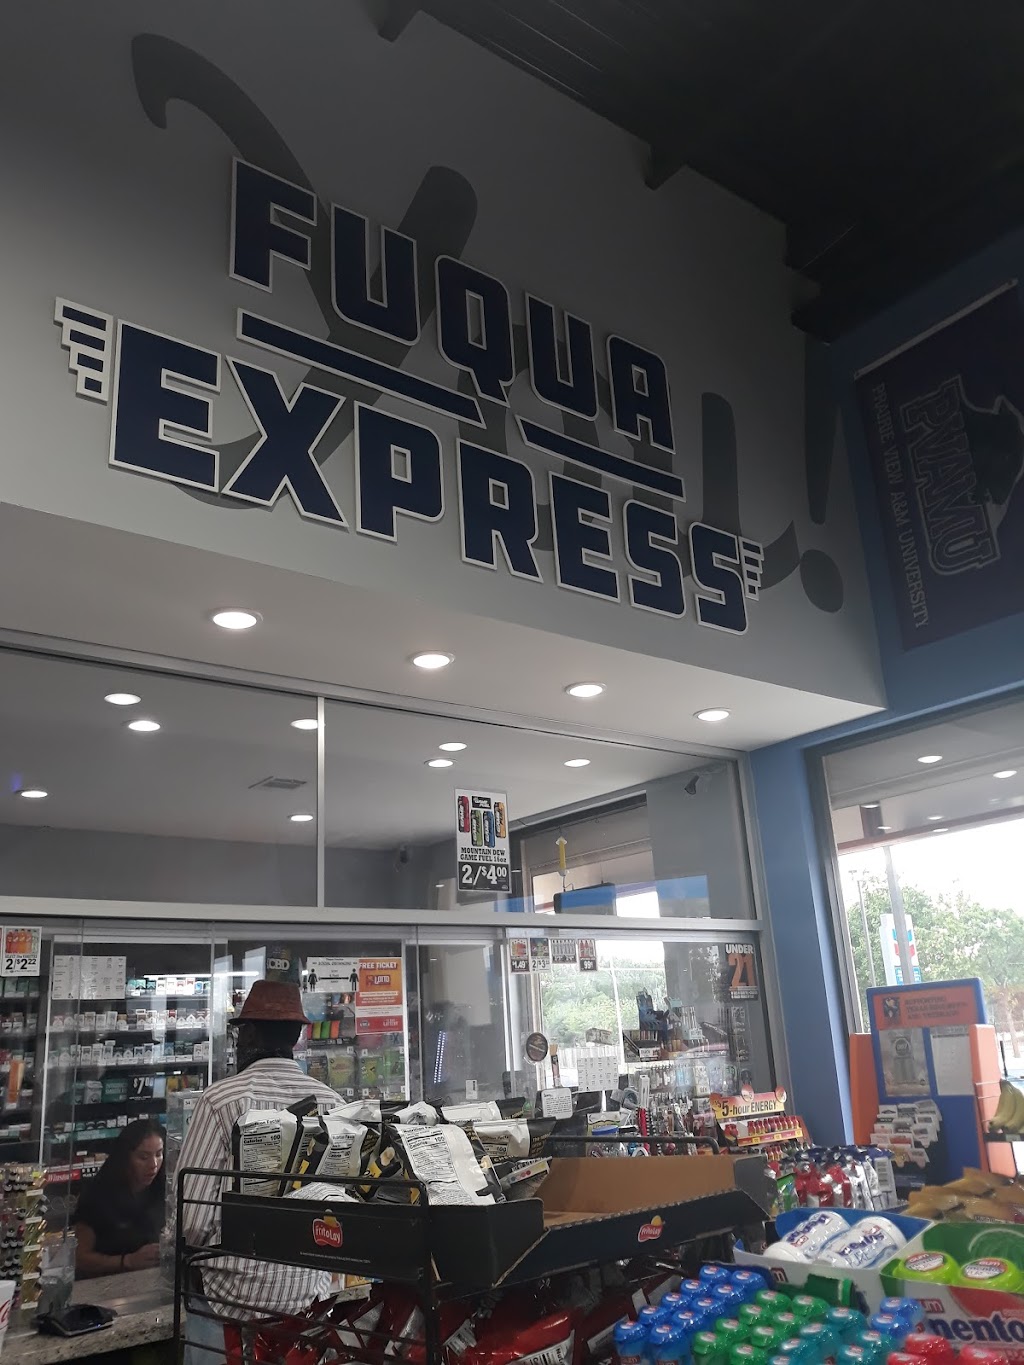 Fuqua Express | 6297 W Fuqua St, Missouri City, TX 77489 | Phone: (832) 672-4318